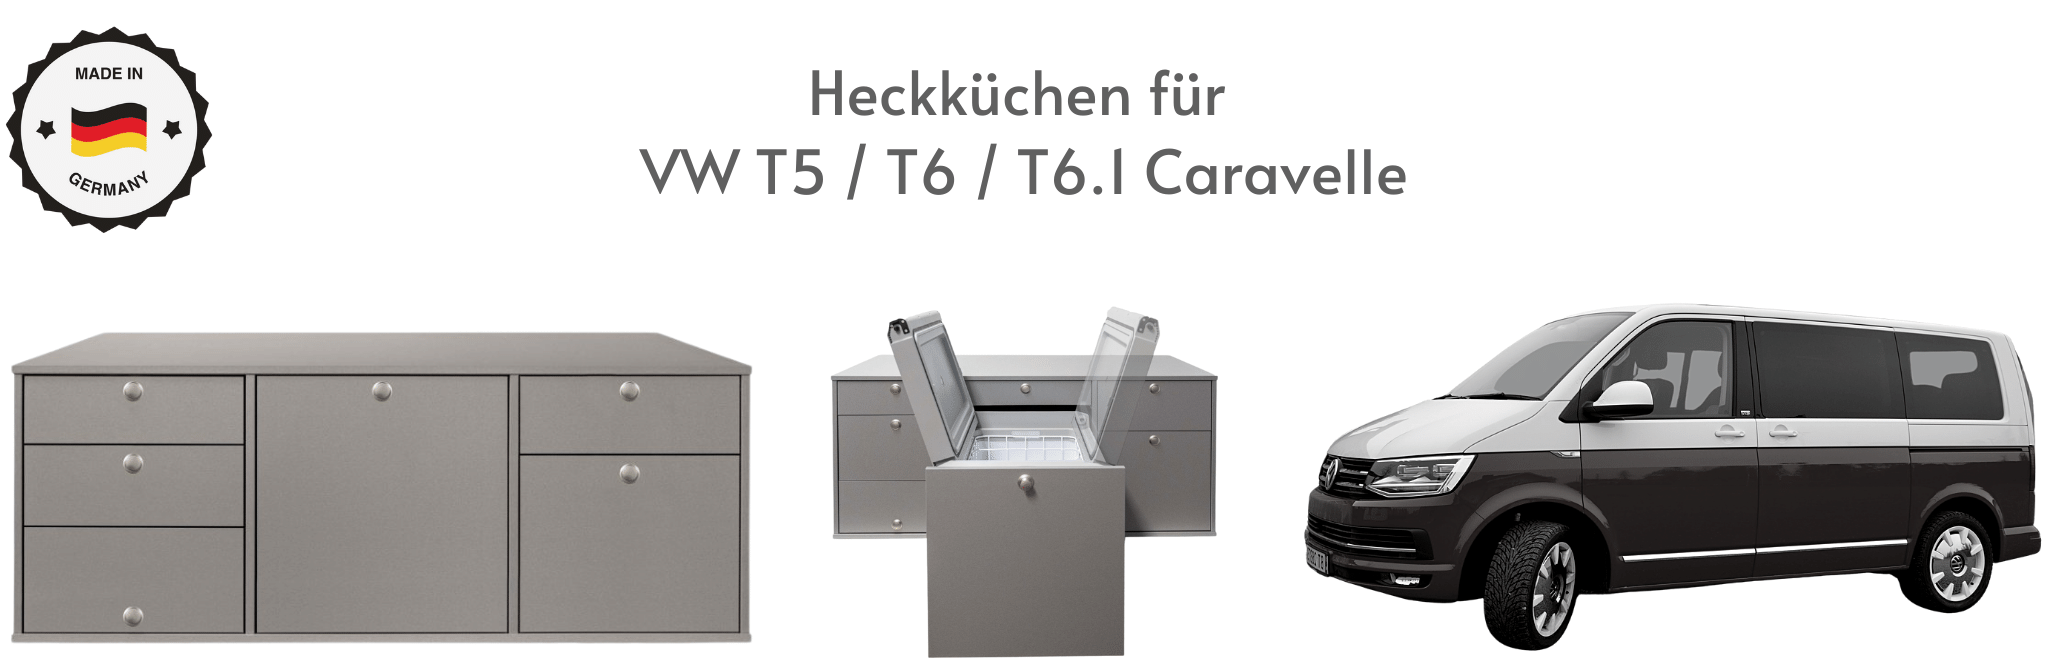 Camping Heckküchen für VW T5 / T6 / T6.1 Caravelle